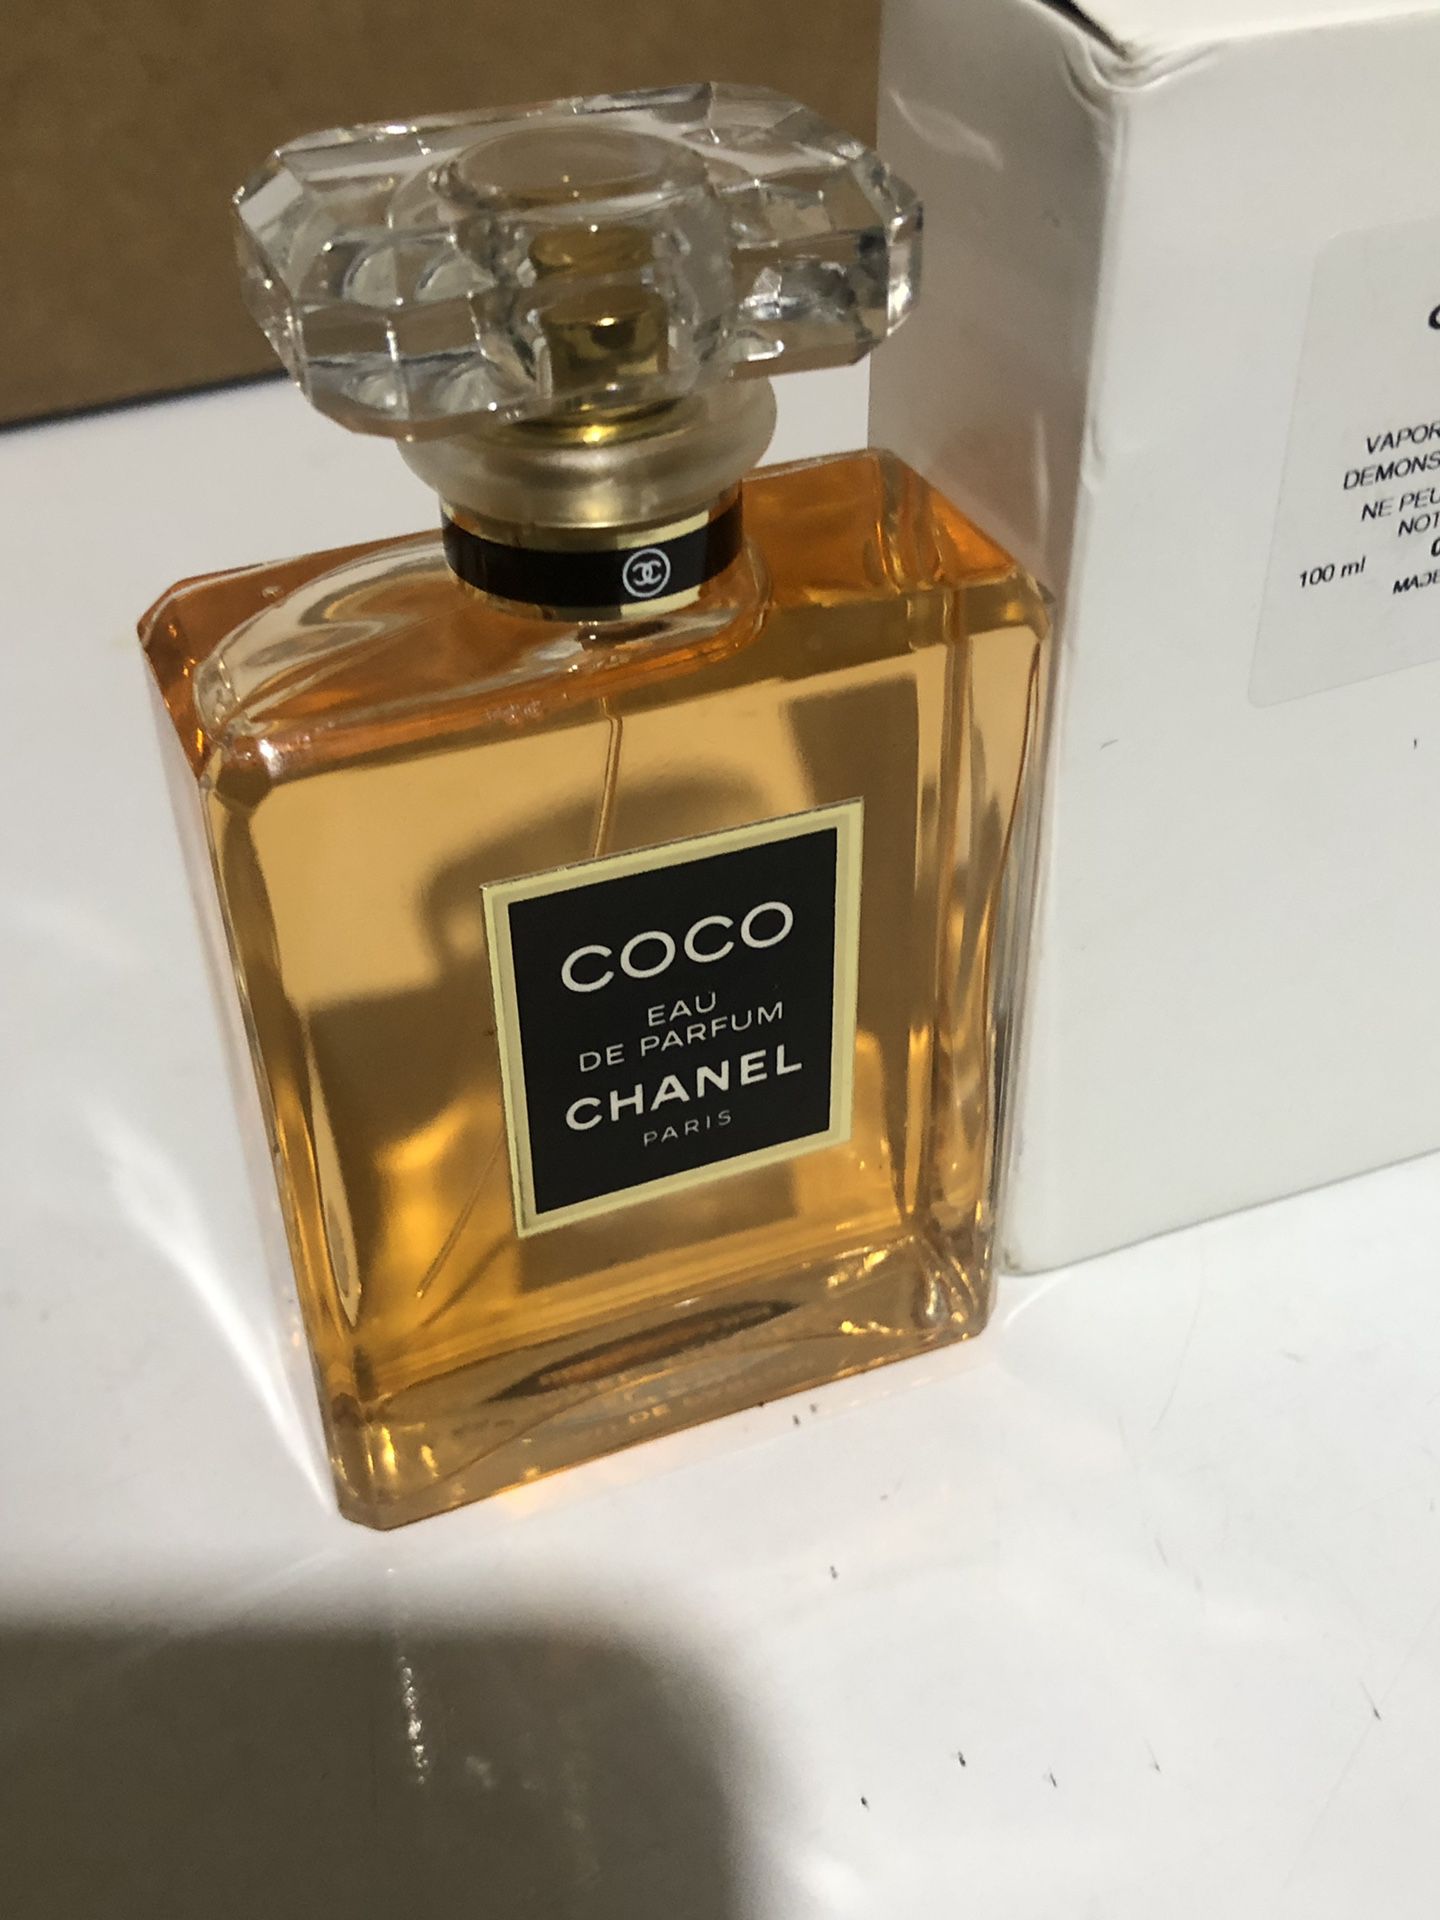 Chanel N°5 Eau De Parfum gift box 3.4 fl Oz for Sale in Cypress, TX